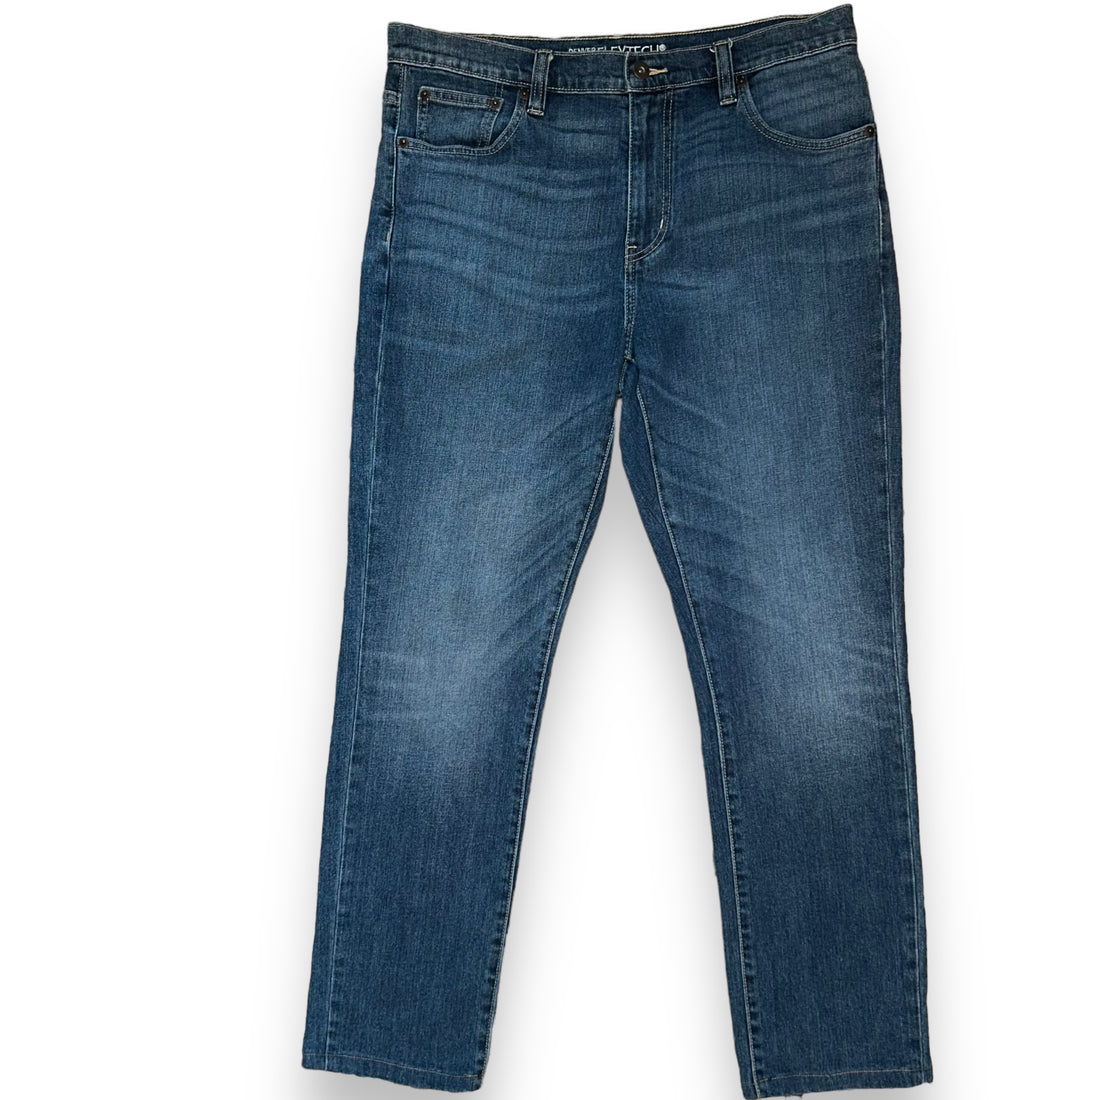 Jeans DENVER HAYES  (34 USA  L)